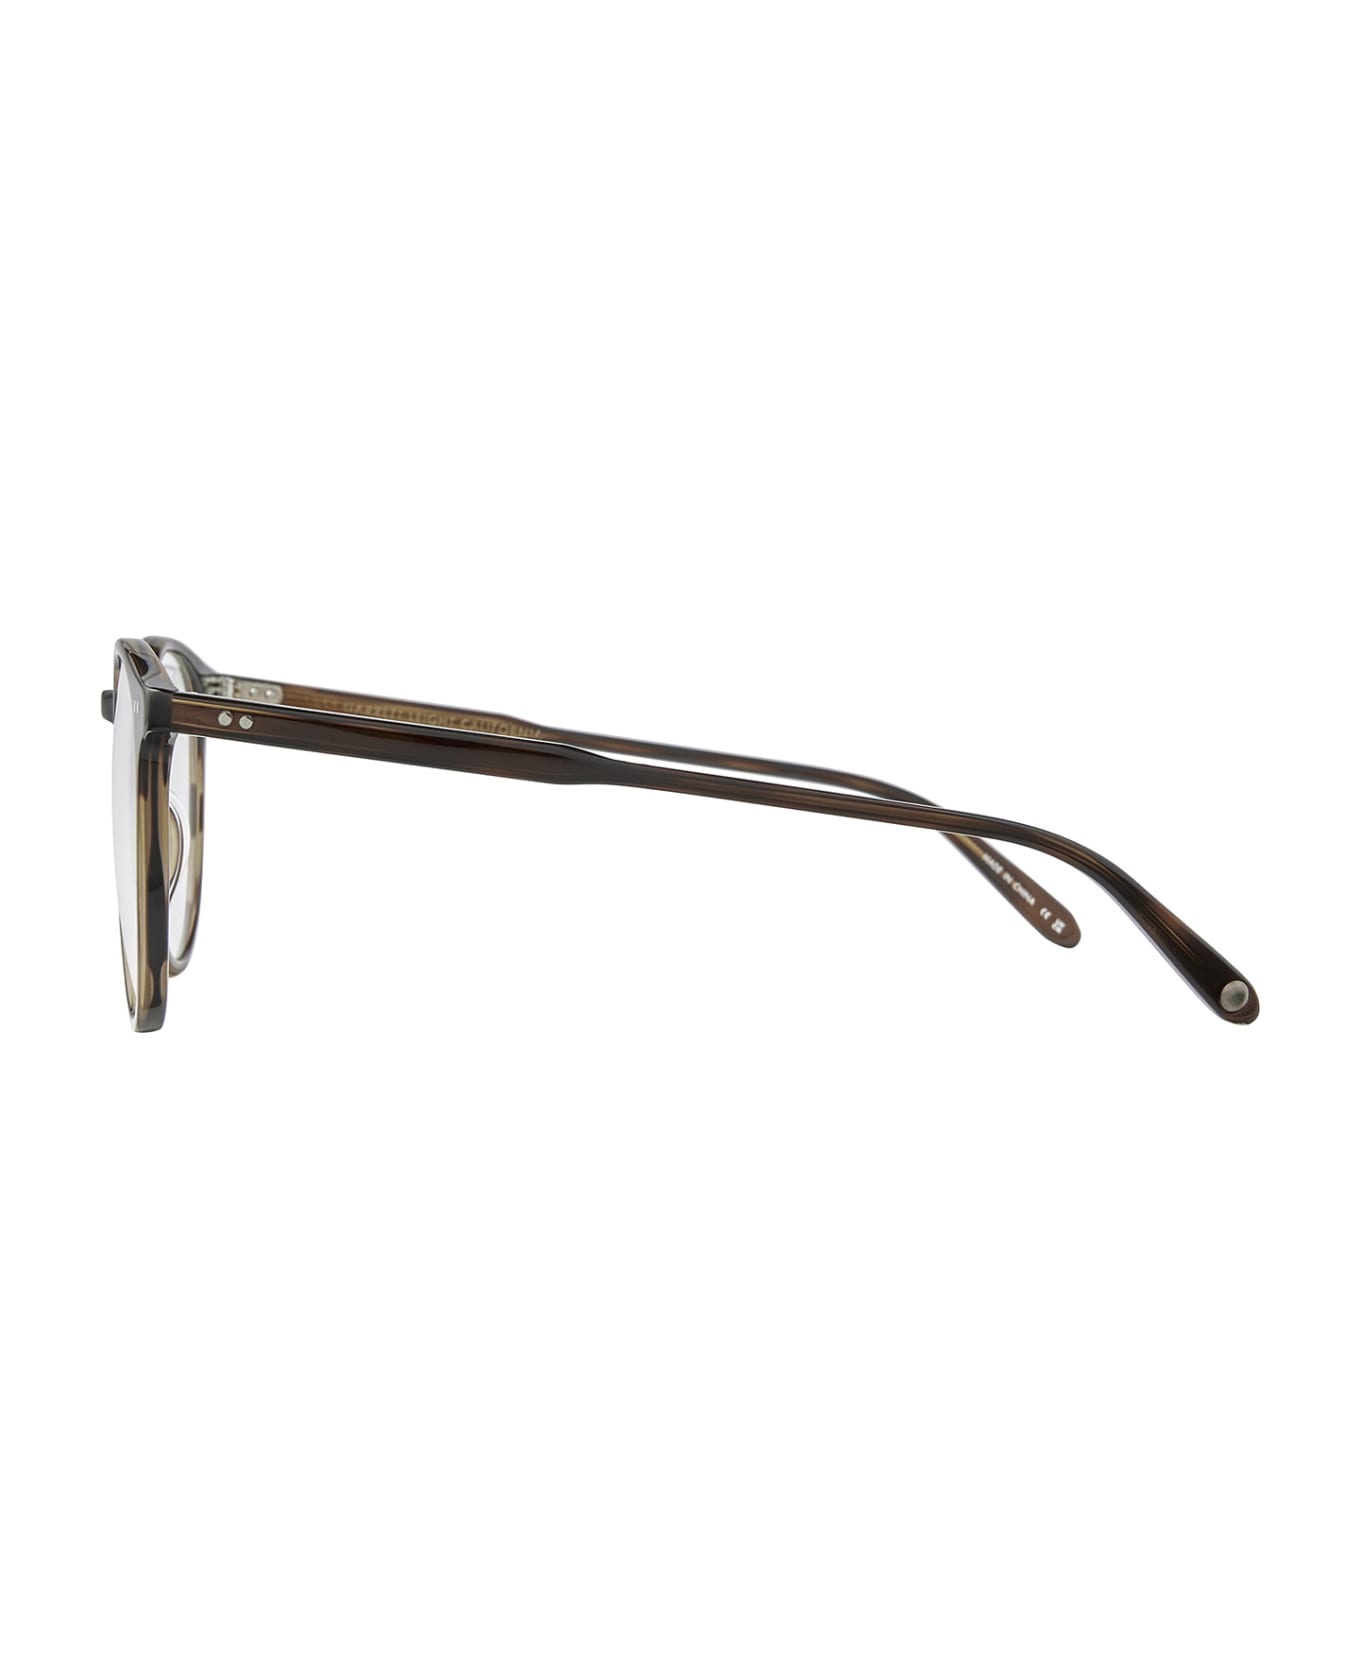 Garrett Leight Morningside Spotted Brown Shell Glasses - Spotted Brown Shell アイウェア